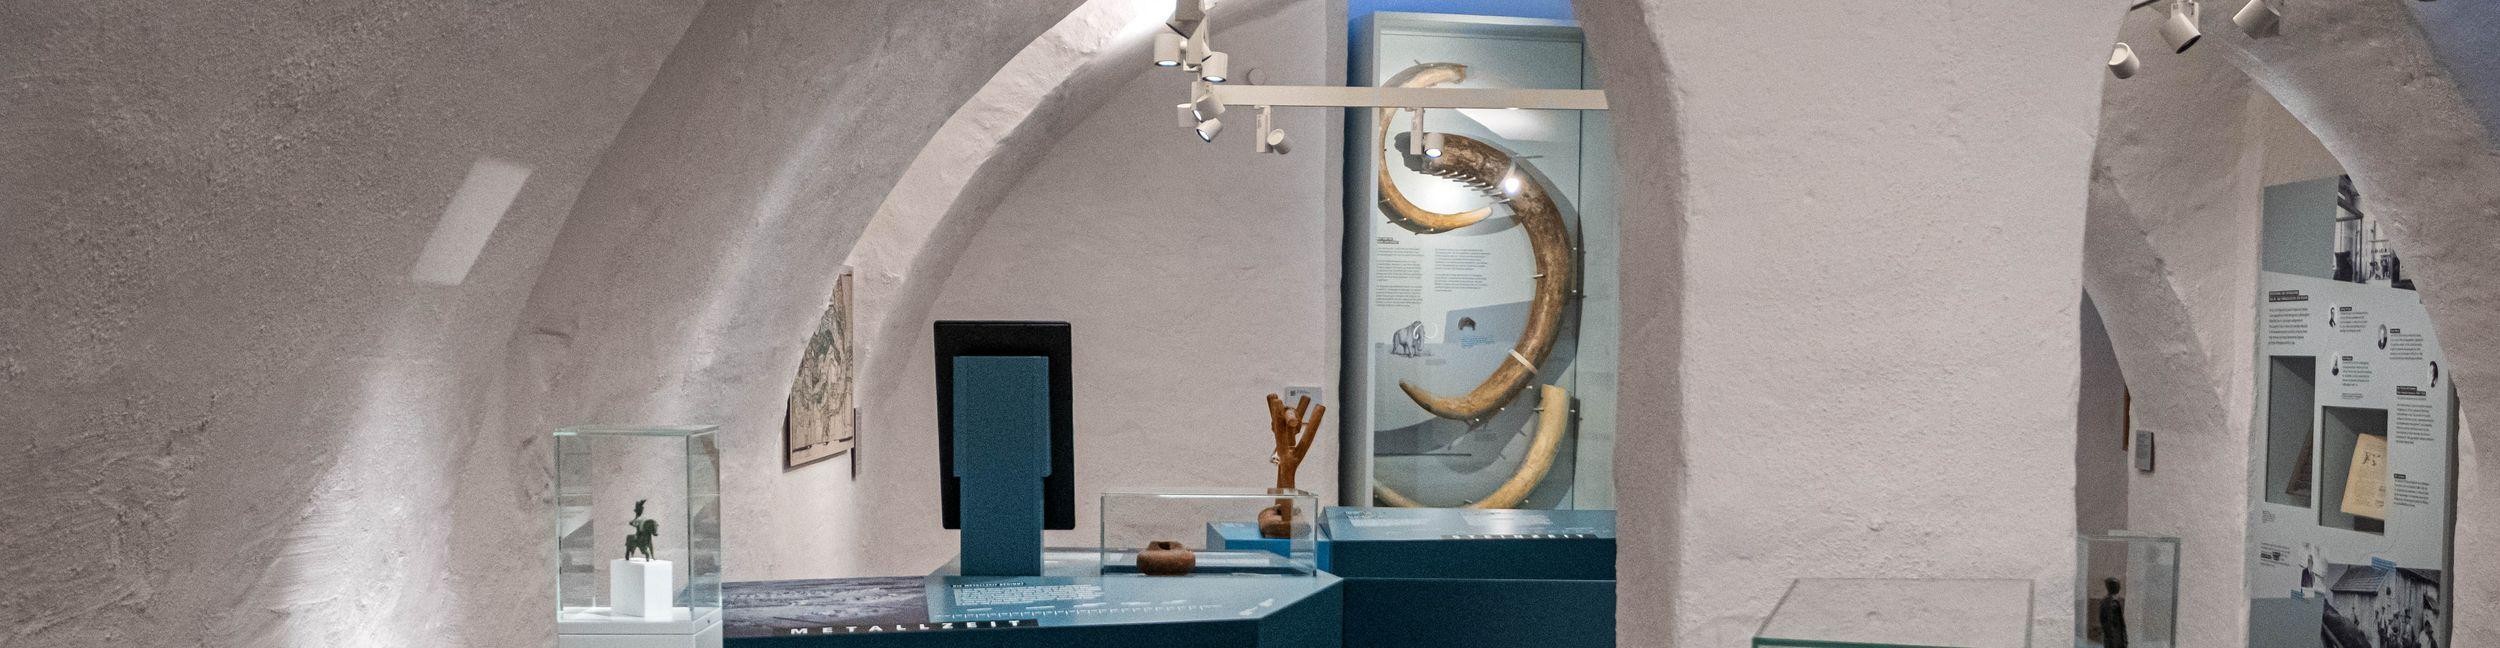 Dauerausstellung zur Ur- und Frühgeschichte: In einer Vitrine werden Mammut-Stoßzähne gezeigt.